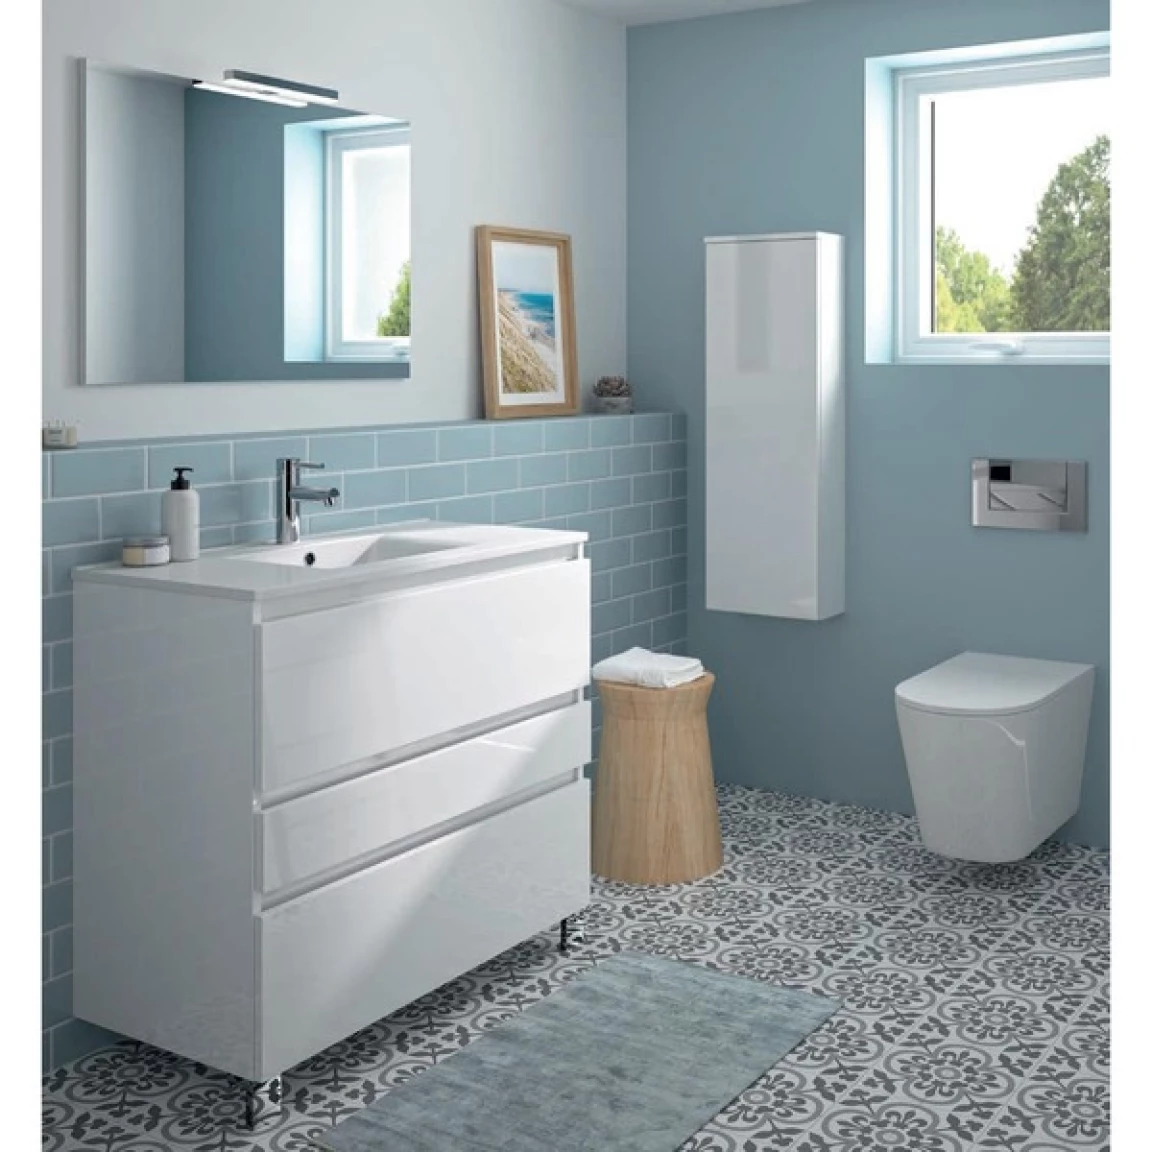 Ensemble meuble de salle de bain CAMPUS 90 cm, plan vasque GELCOAT, prof. cuve 115 mm, miroir sur plan, noir filaire, 3 tiroirs